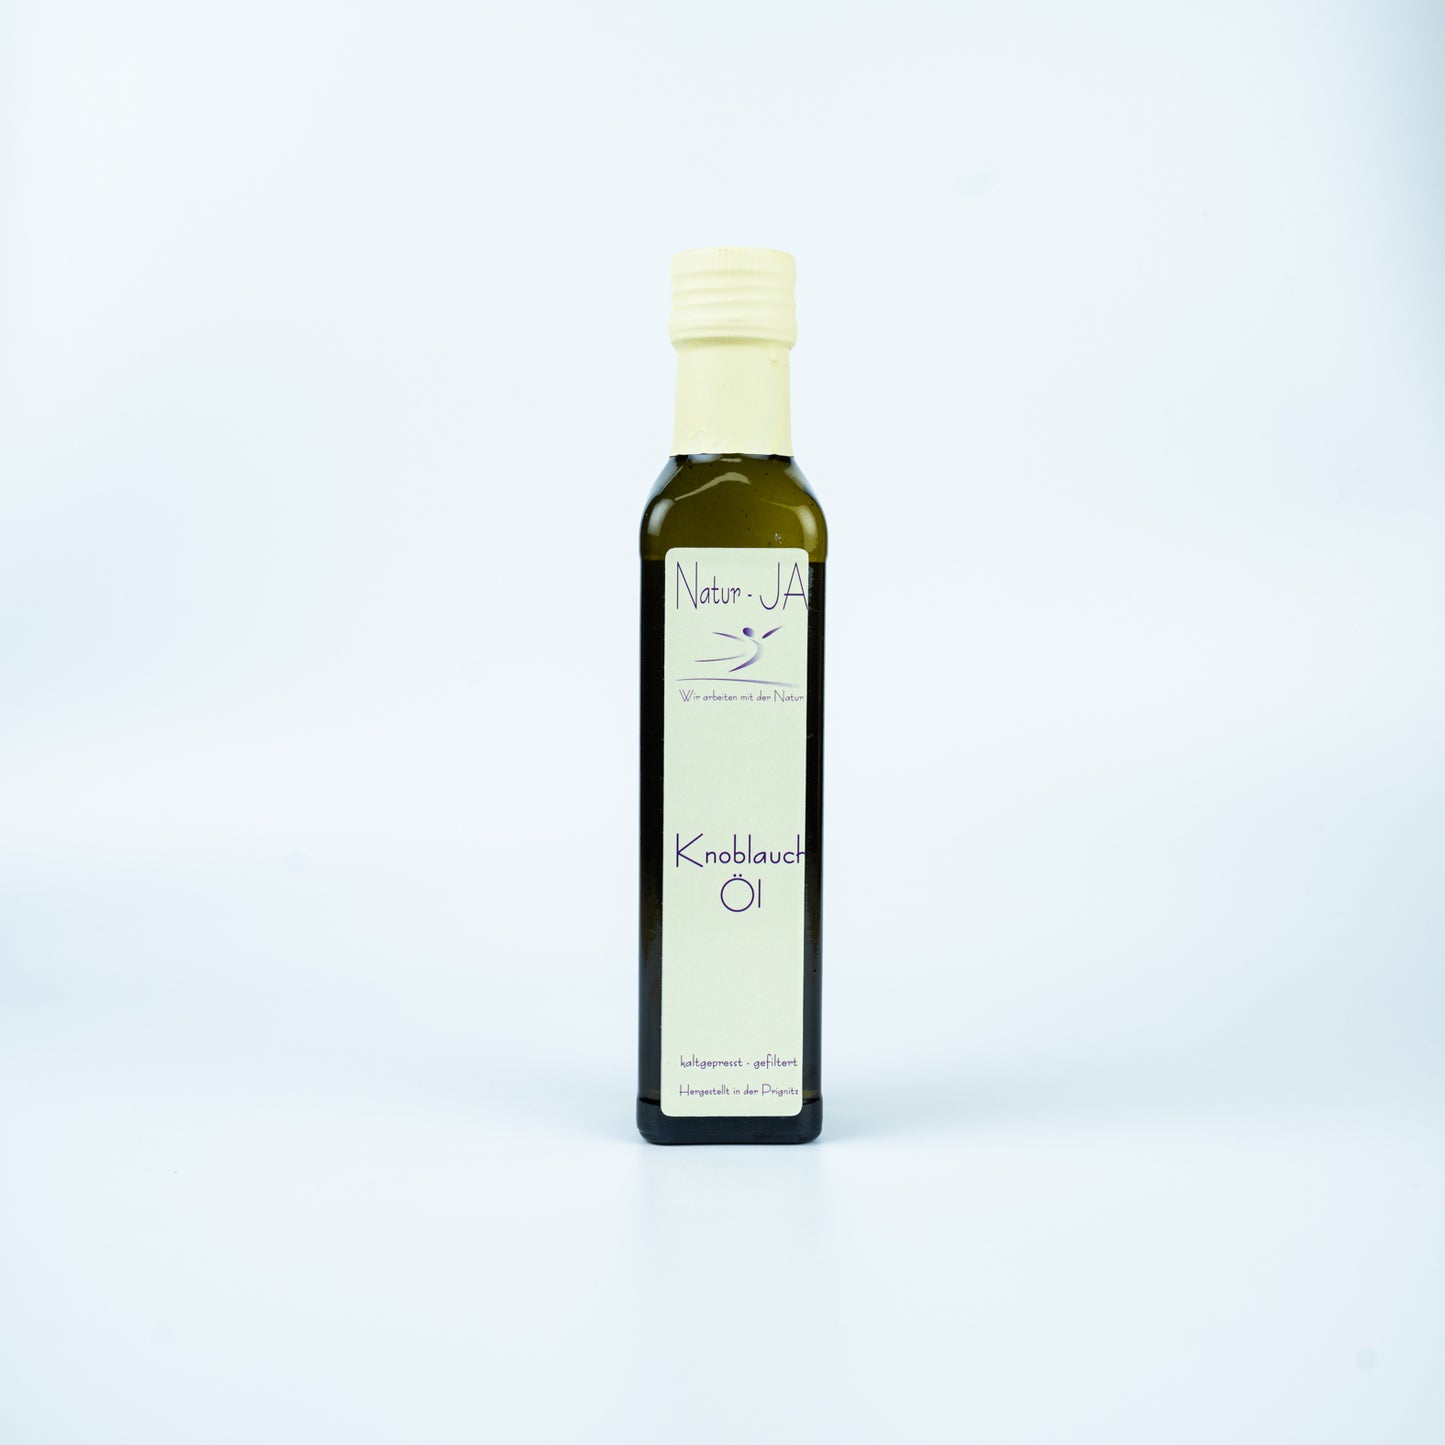 Knoblauch Öl, Natur-JA, 100 ml